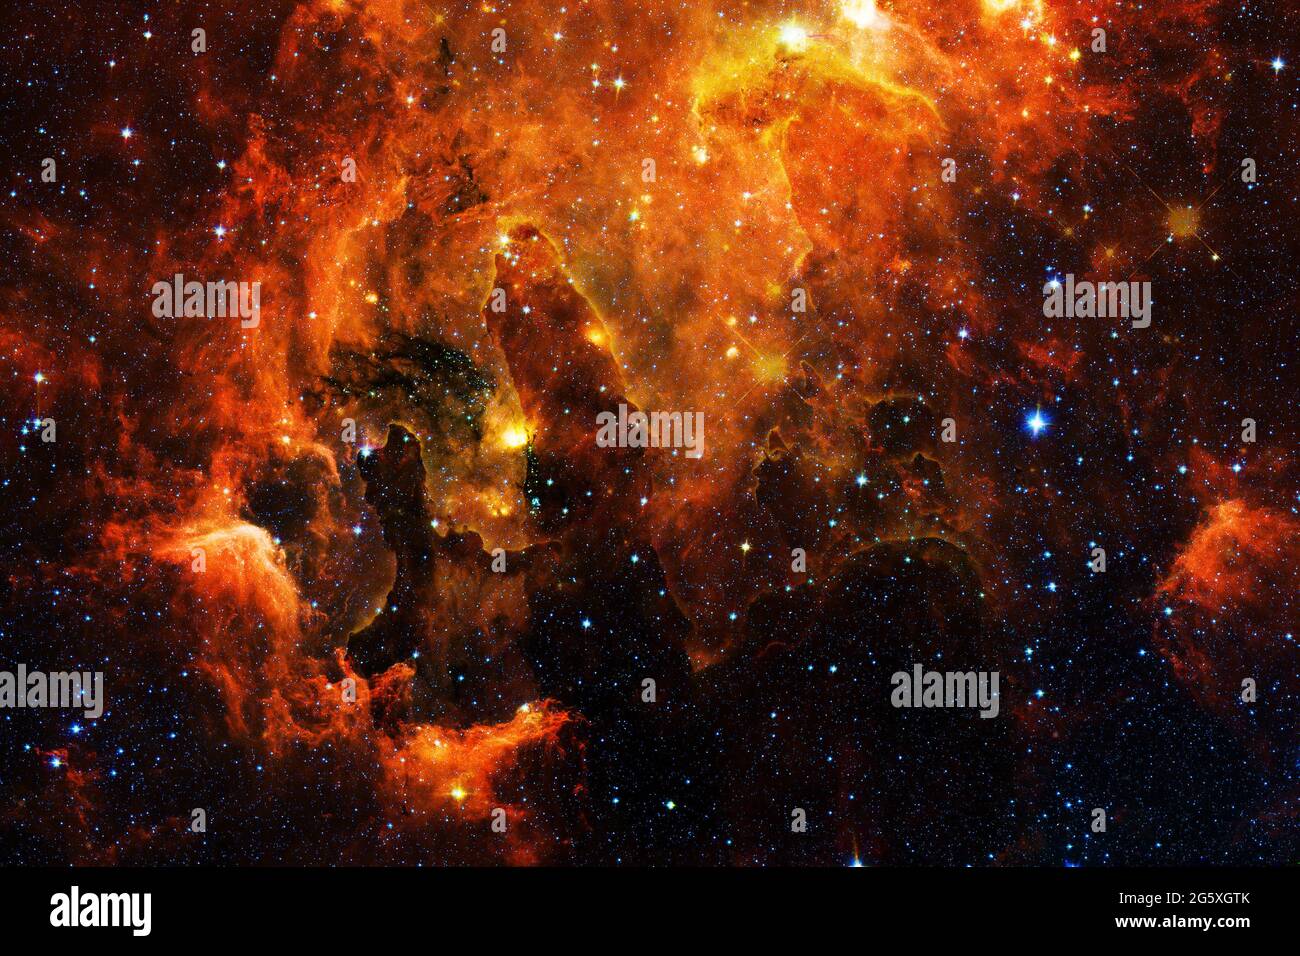 Spazio profondo. Resa fantascientifica impressionante. Elementi di questa immagine forniti dalla NASA. Foto Stock